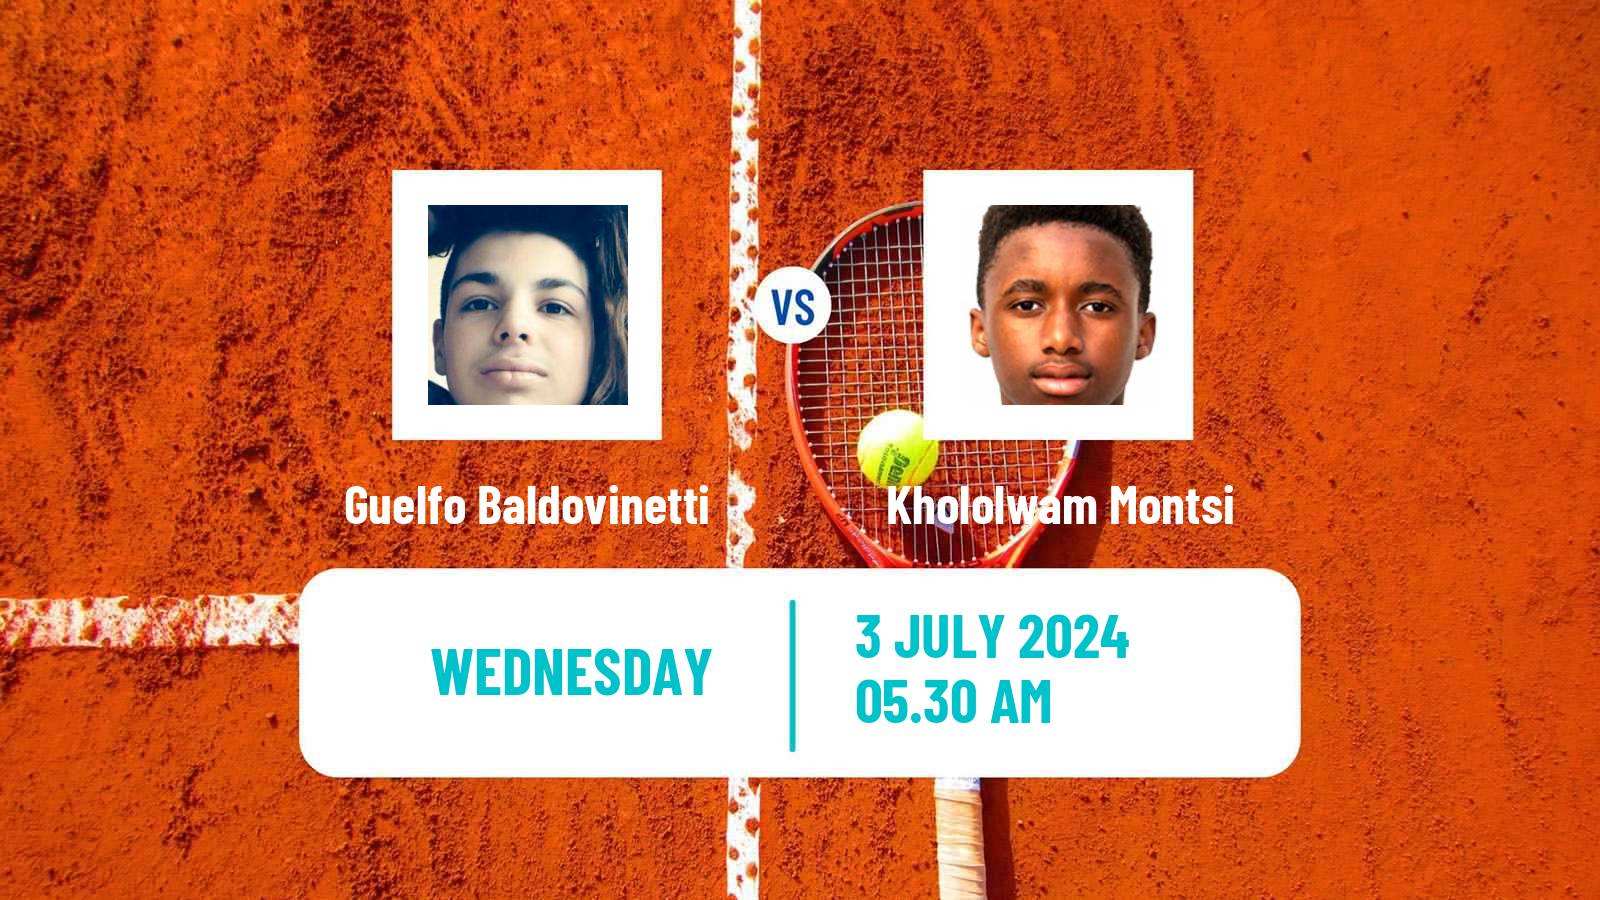 Tennis ITF M15 Hillcrest 2 Men Guelfo Baldovinetti - Khololwam Montsi